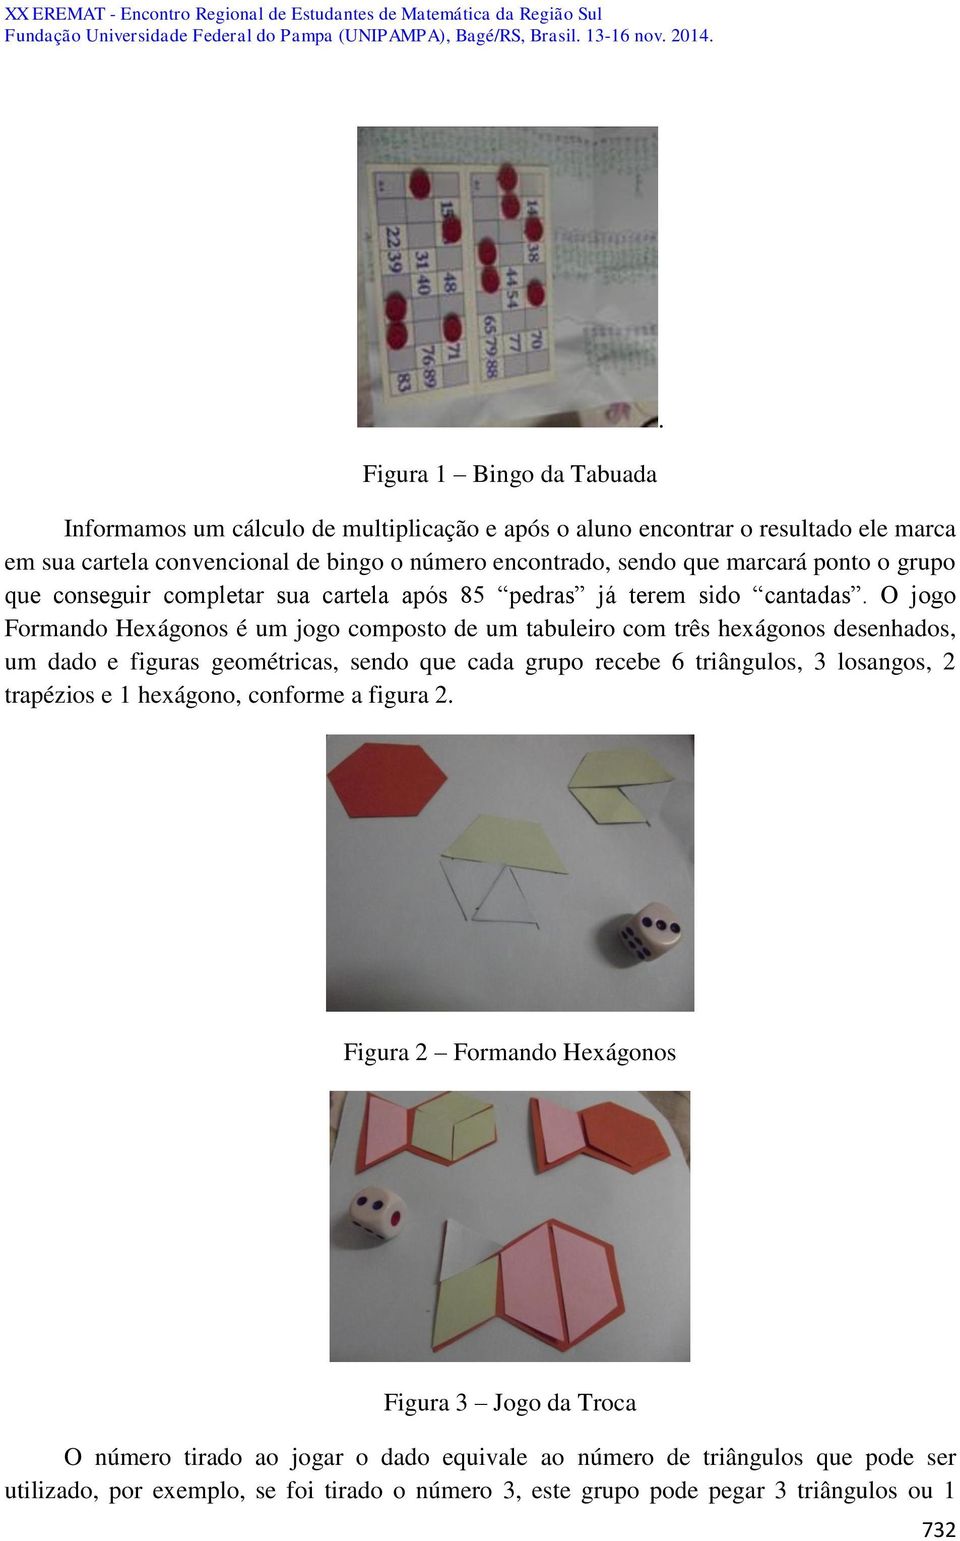 O jogo Formando Hexágonos é um jogo composto de um tabuleiro com três hexágonos desenhados, um dado e figuras geométricas, sendo que cada grupo recebe 6 triângulos, 3 losangos, 2